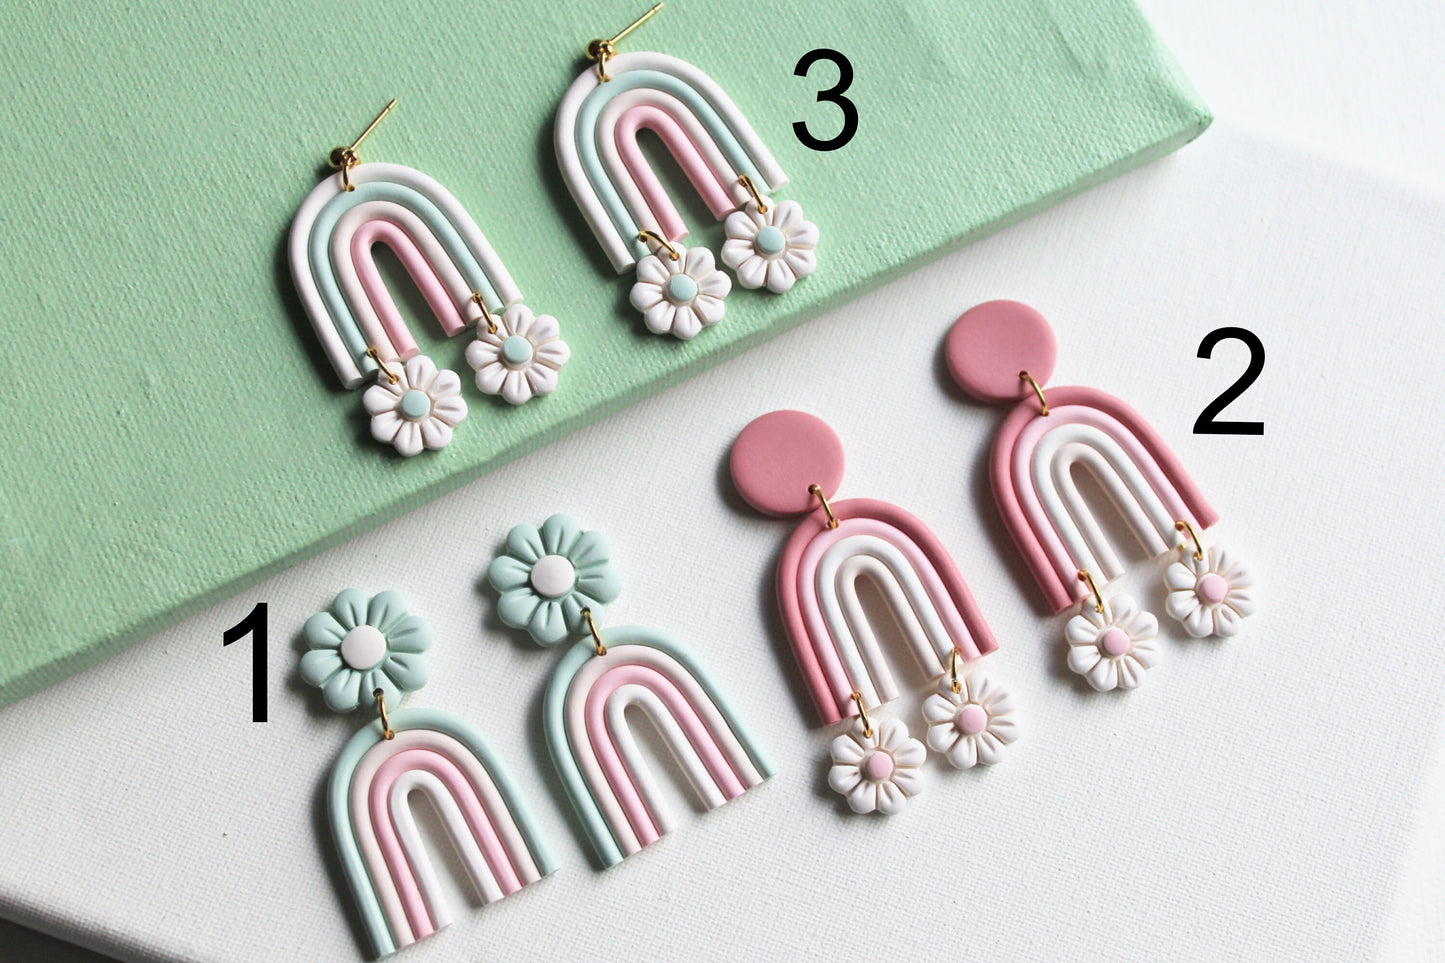 Rainbow Earrings, Daisy Earrings, Polymer Clay Earrings, Rainbow Boho Earrings, Statement Earrings, Flower Earrings, Unique, Cute Earrings